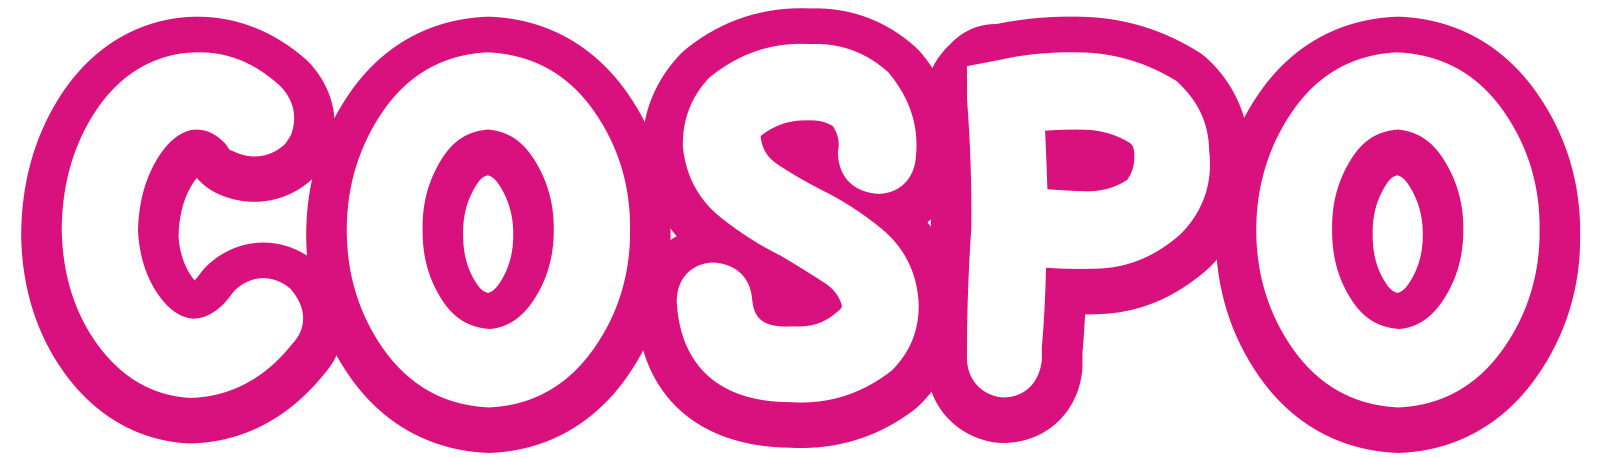 Cospo-logo